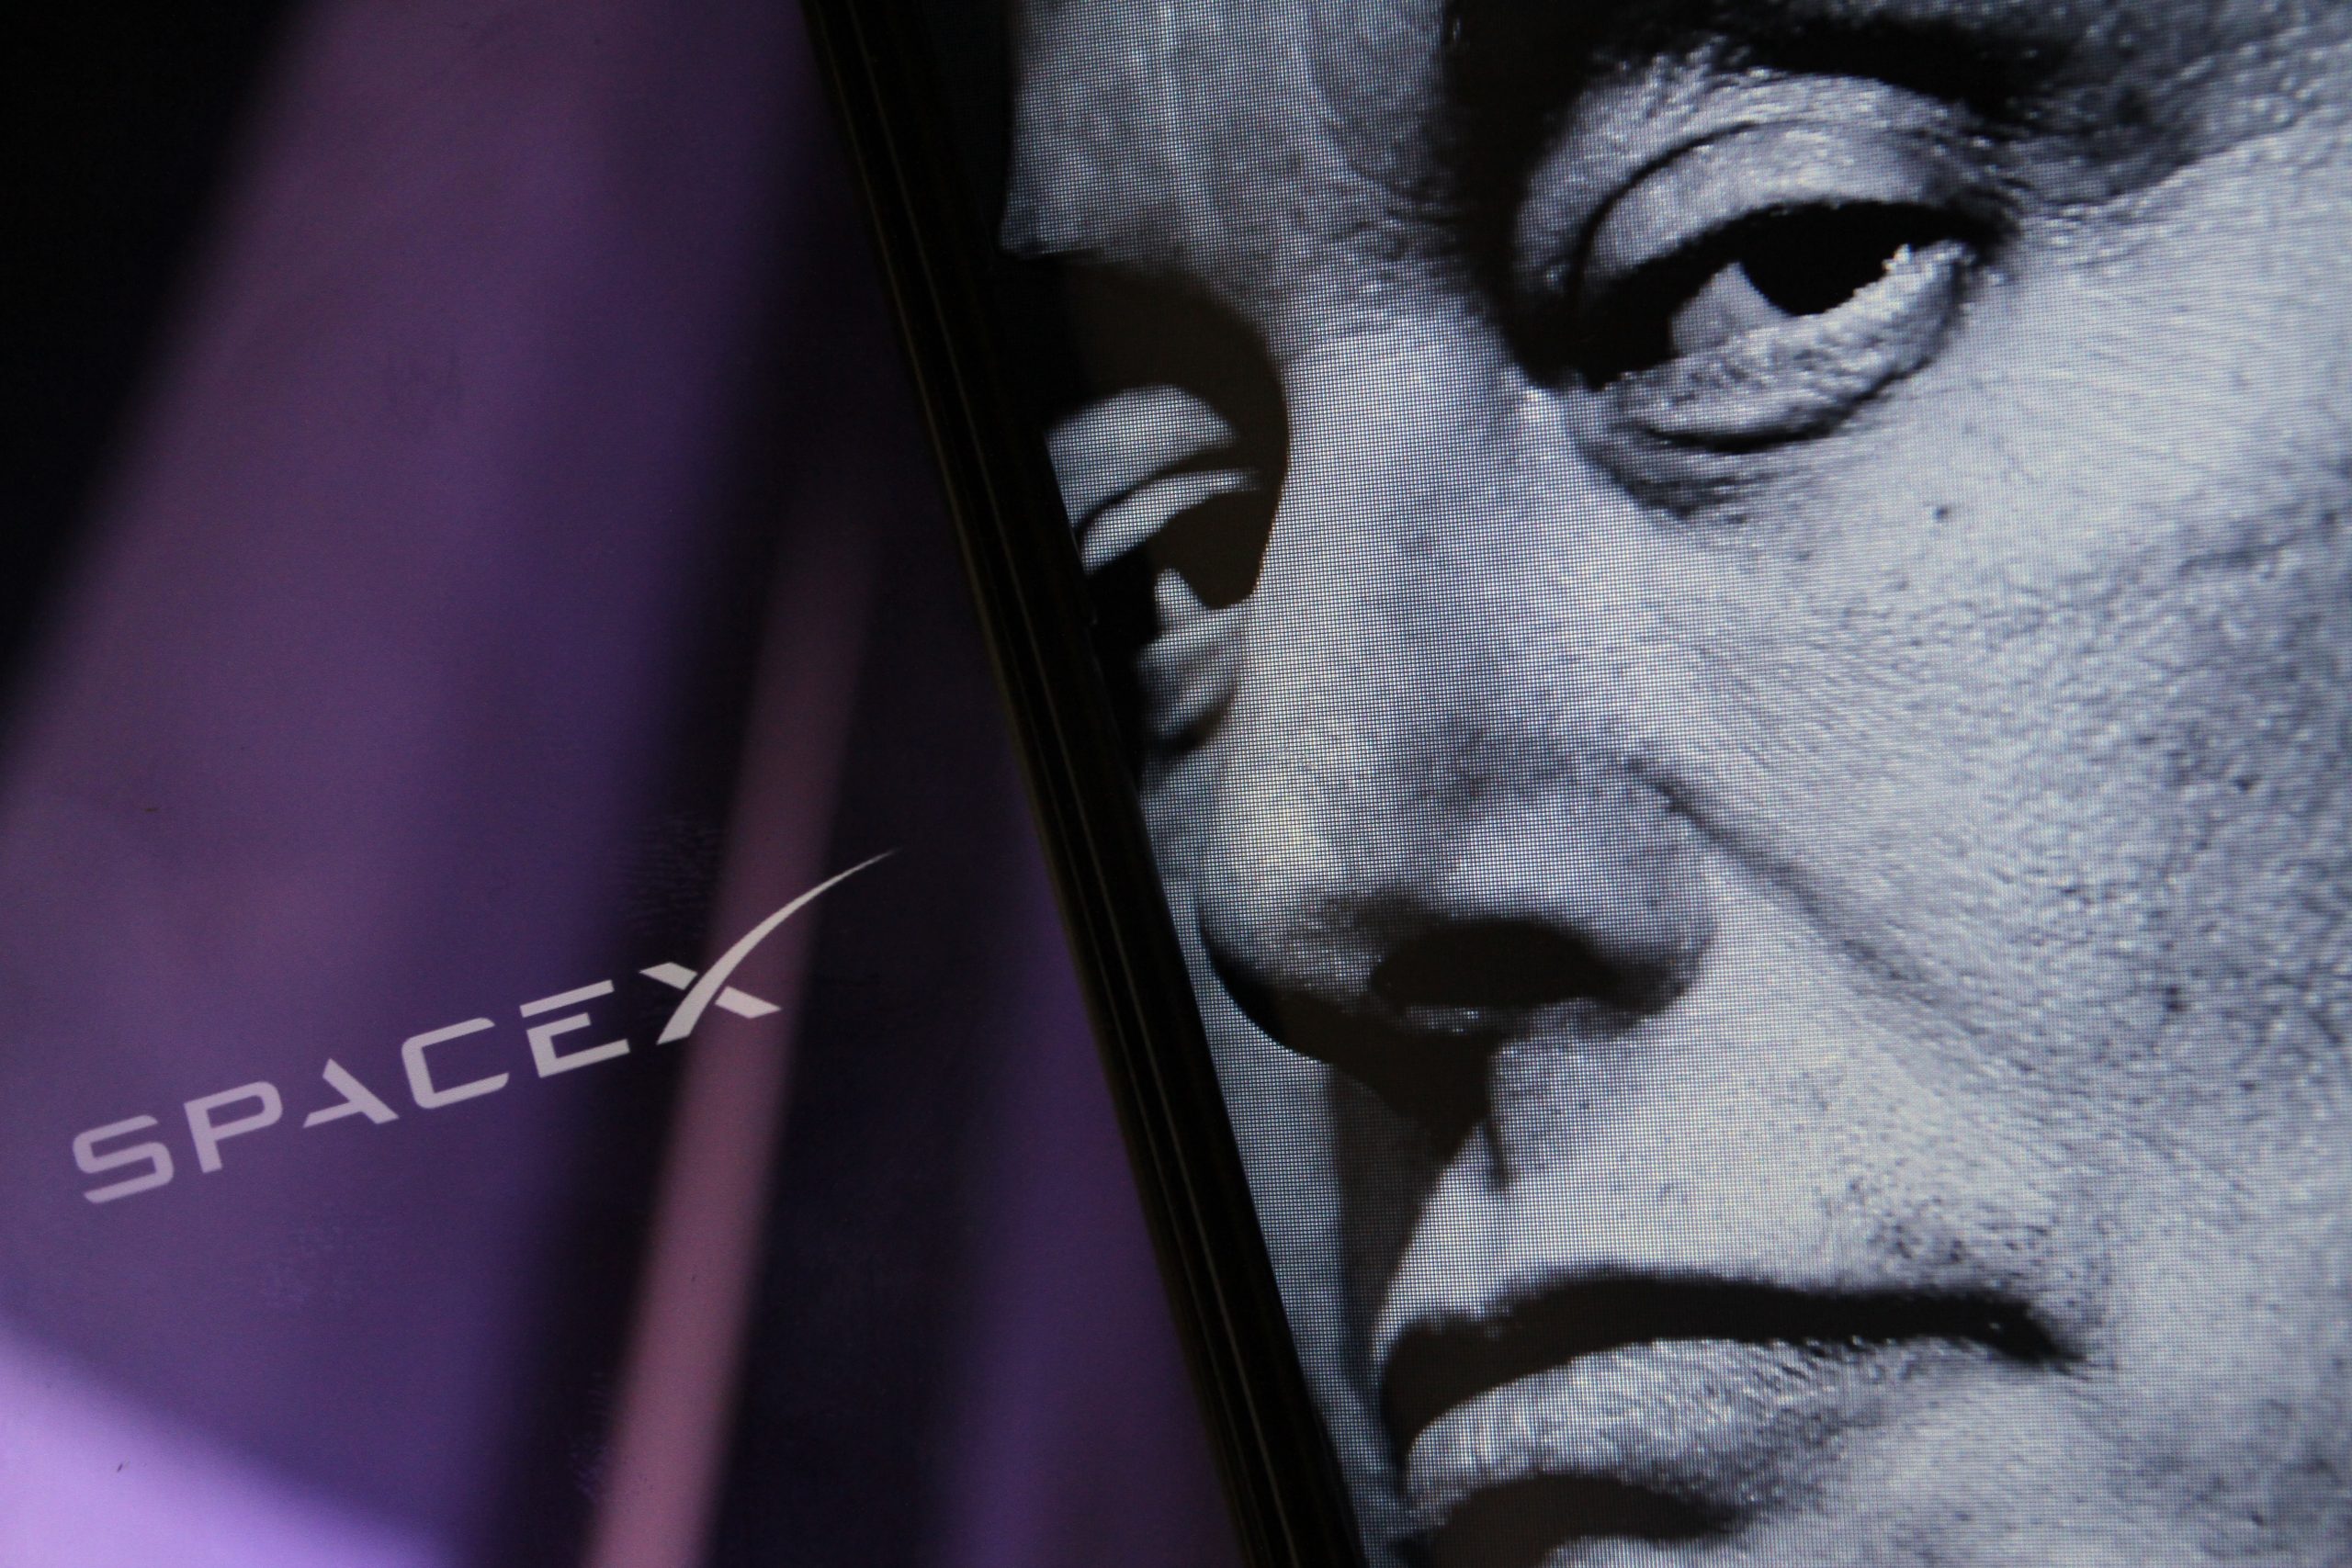 Nesta ilustração, a logomarca da SpaceX pode ser vista na tela de um smartphone ao fundo, com a imagem do rosto de Elon Musk em preto e branco exibida à frente